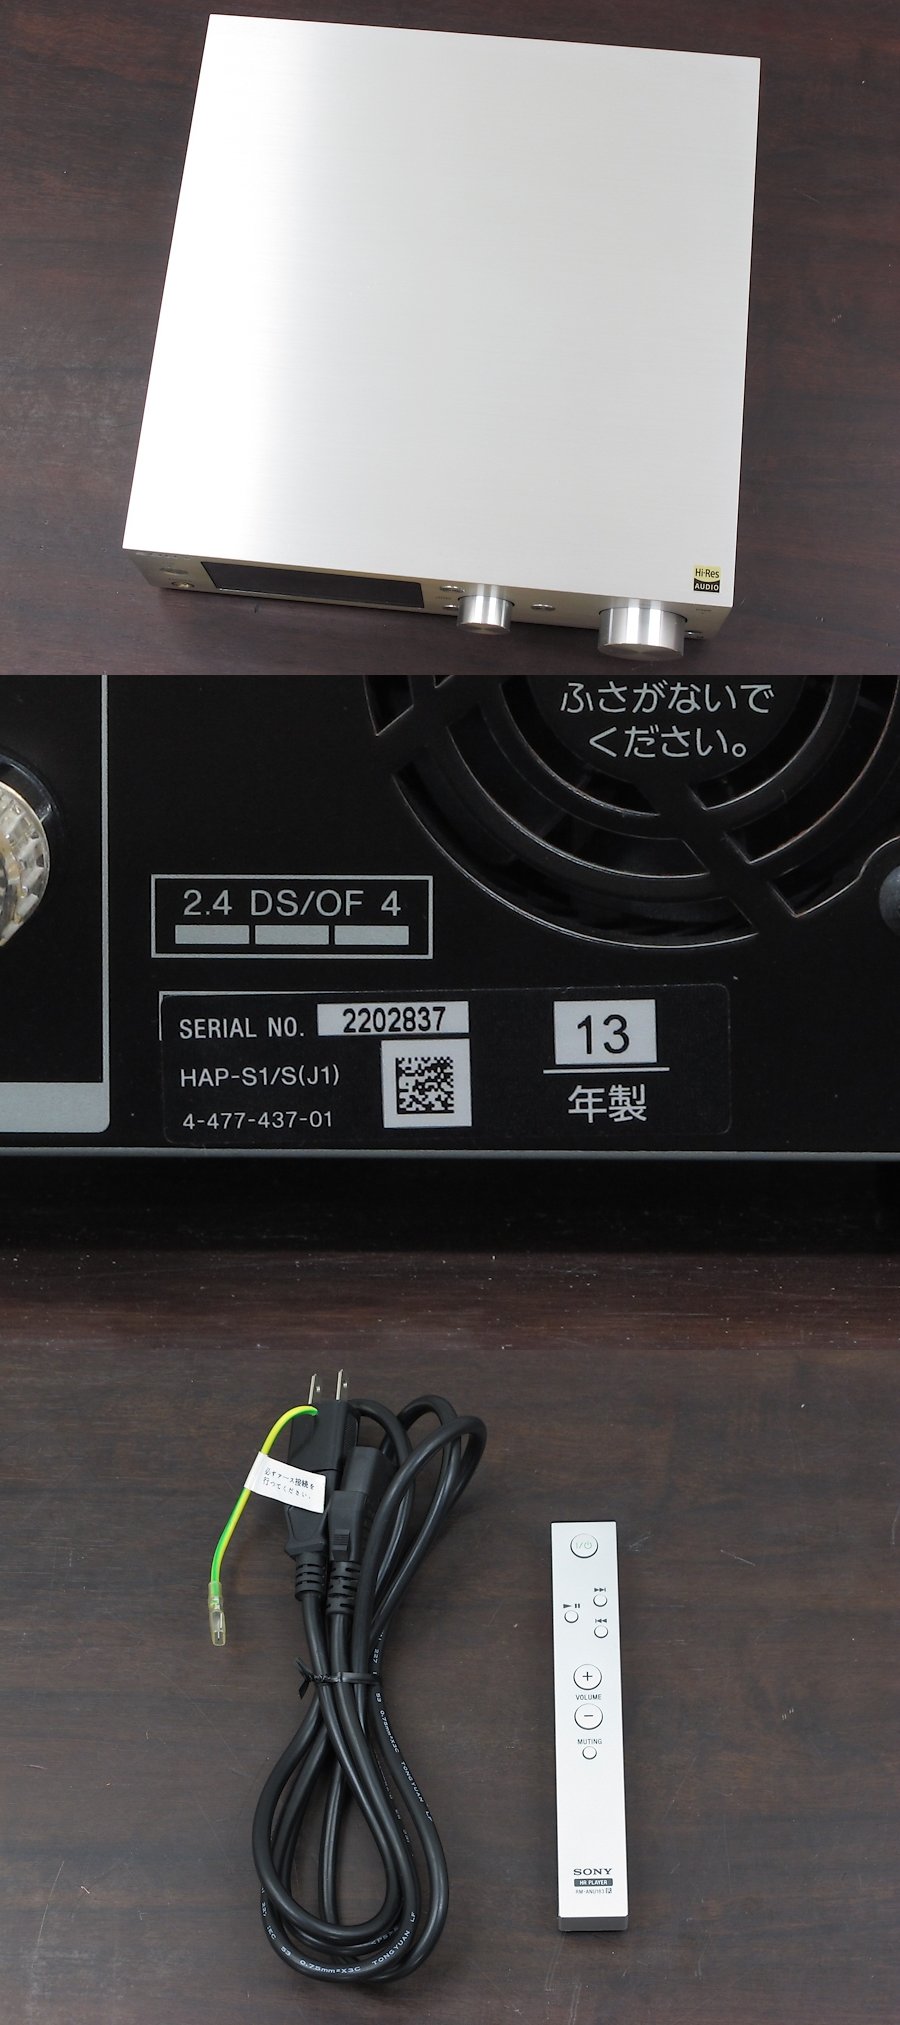 ソニー SONY HAP-S1 HDDオーディオプレーヤー 2013年製 @36981 / 中古オーディオ買取、販売、通販のショップアフロ